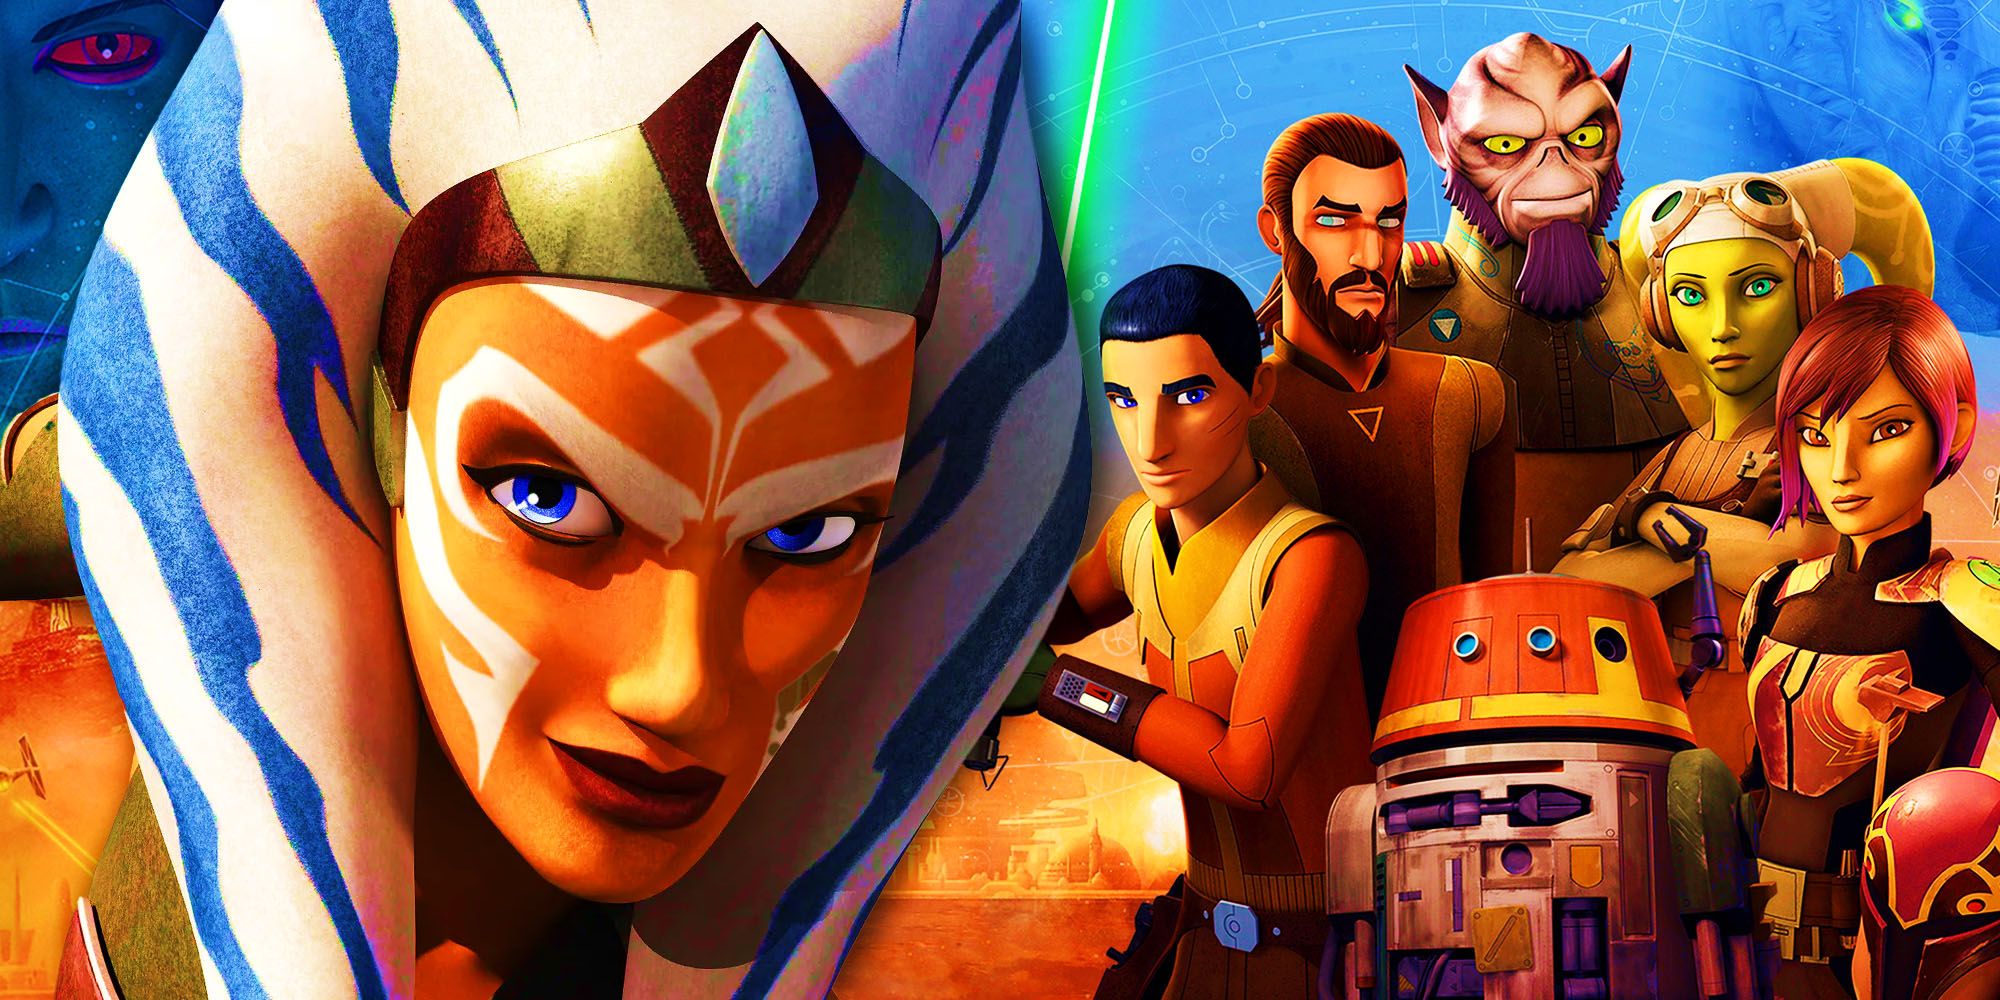 Ahsoka and the Star Wars Rebels characters